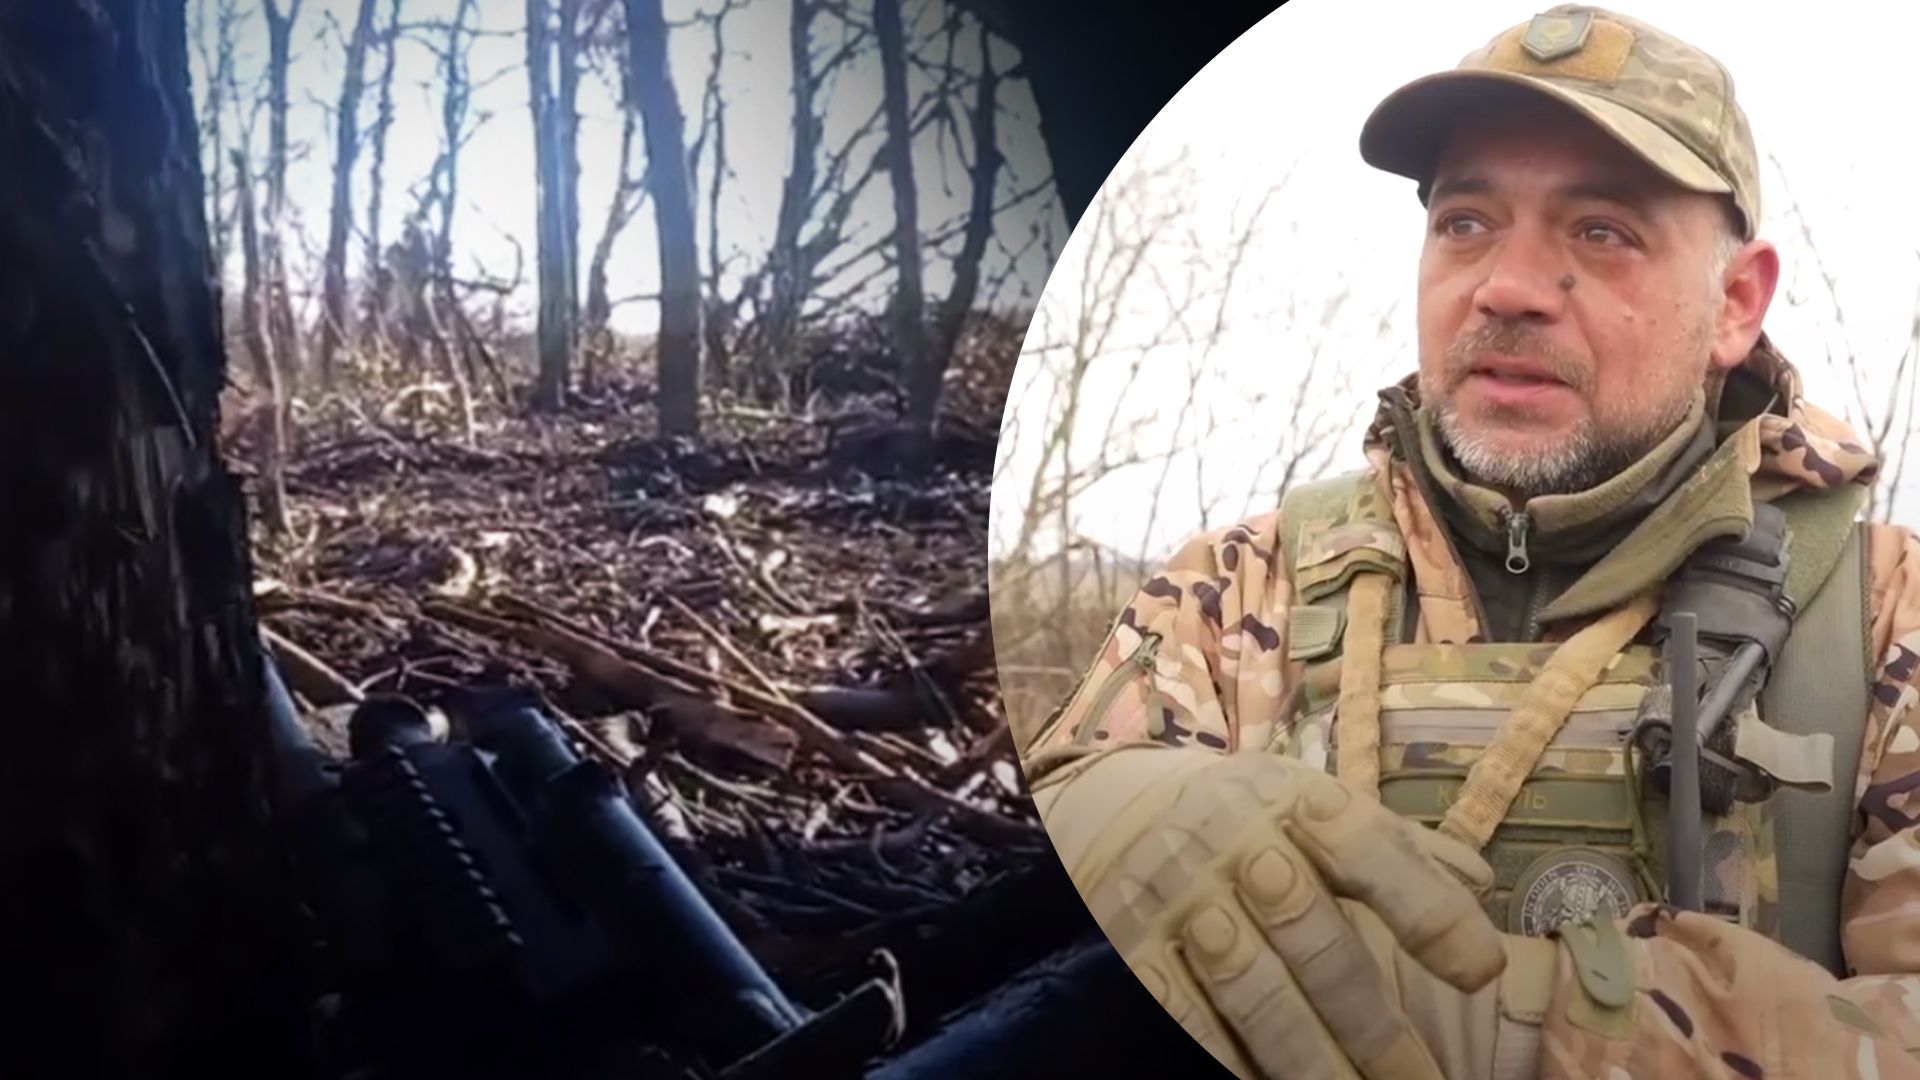 "Или ты, или тебя": как четверо украинских воинов остановили оккупантов - 24 Канал